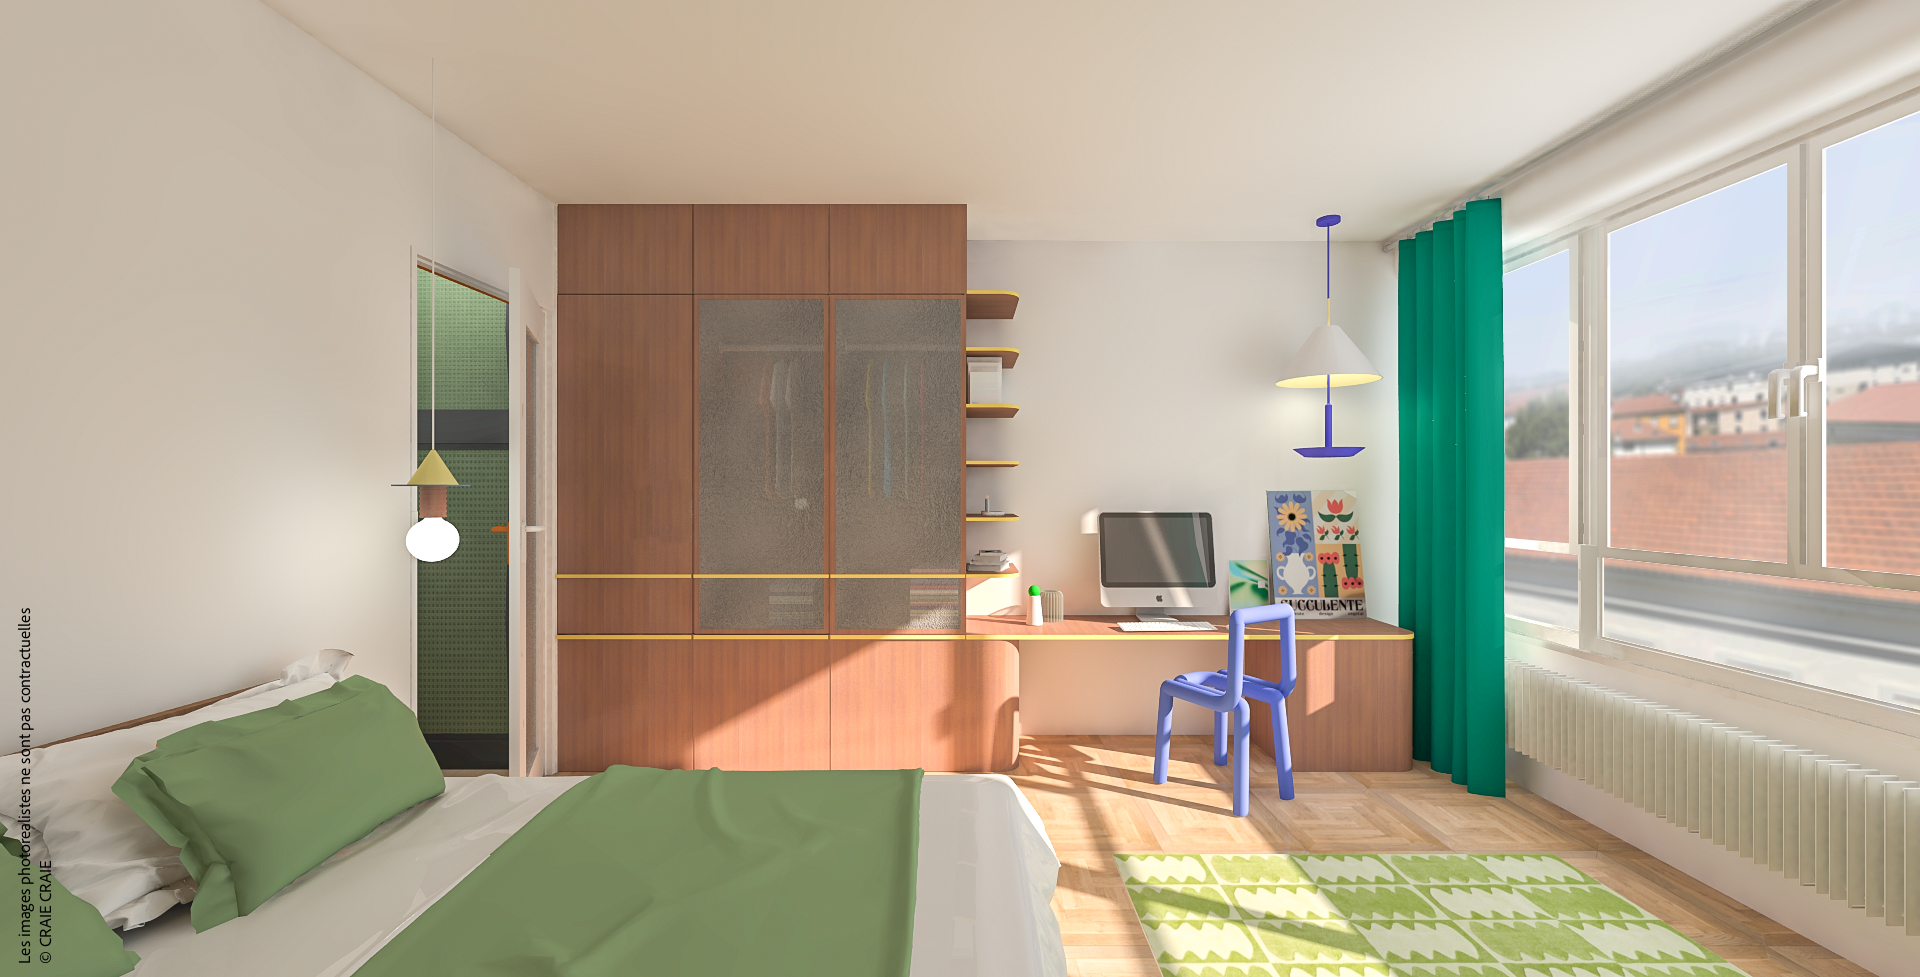 craiecraie-laporte-projet-architecture-appartement-lyon